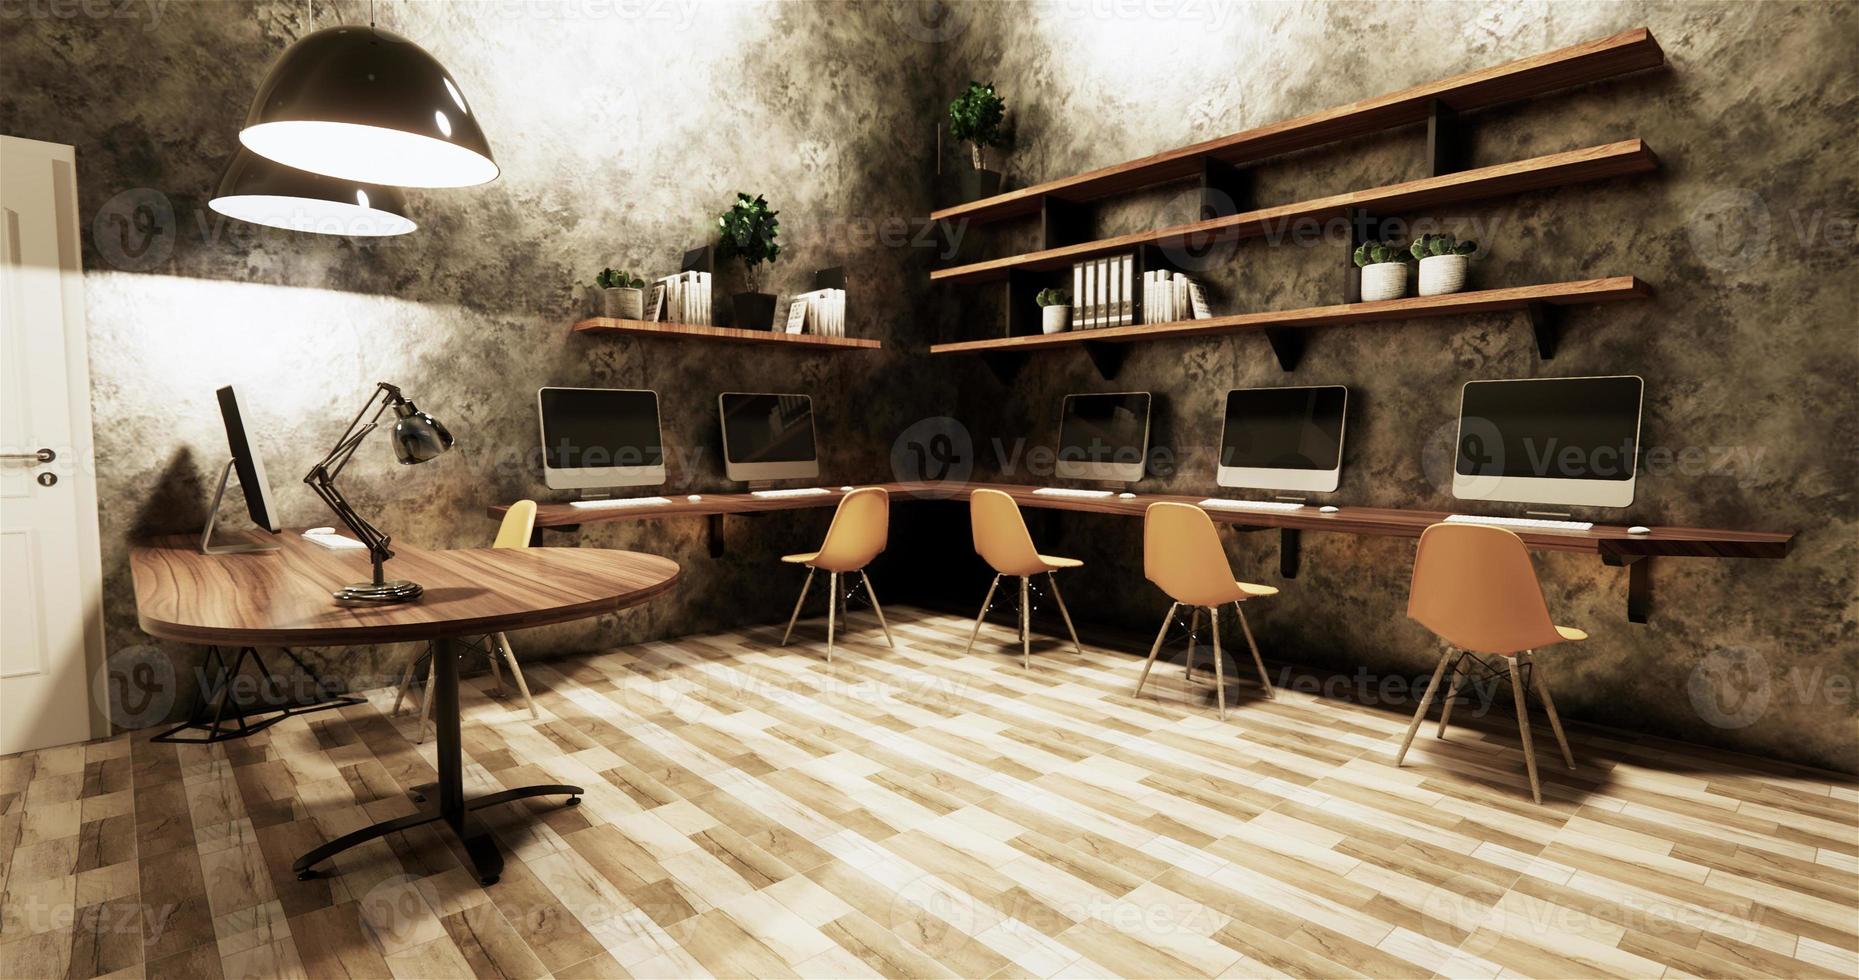 kantoor studio loft-stijl interieur design betonnen muur grijs glanzend op houten tegels.3D-rendering foto